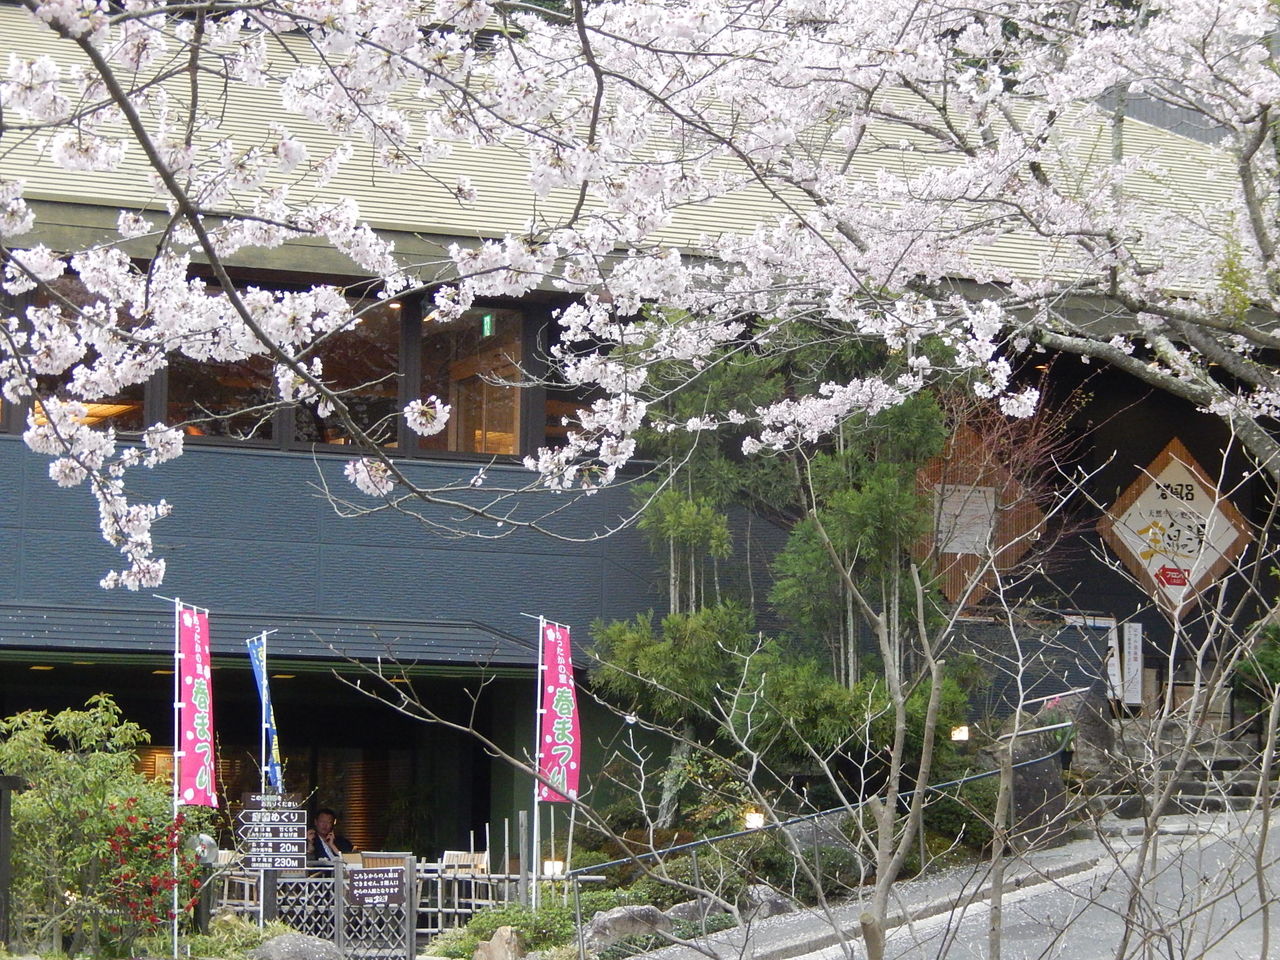 豊田市の癒しの場所 猿投温泉の桜 やつば池散歩道 豊田市 のブログ